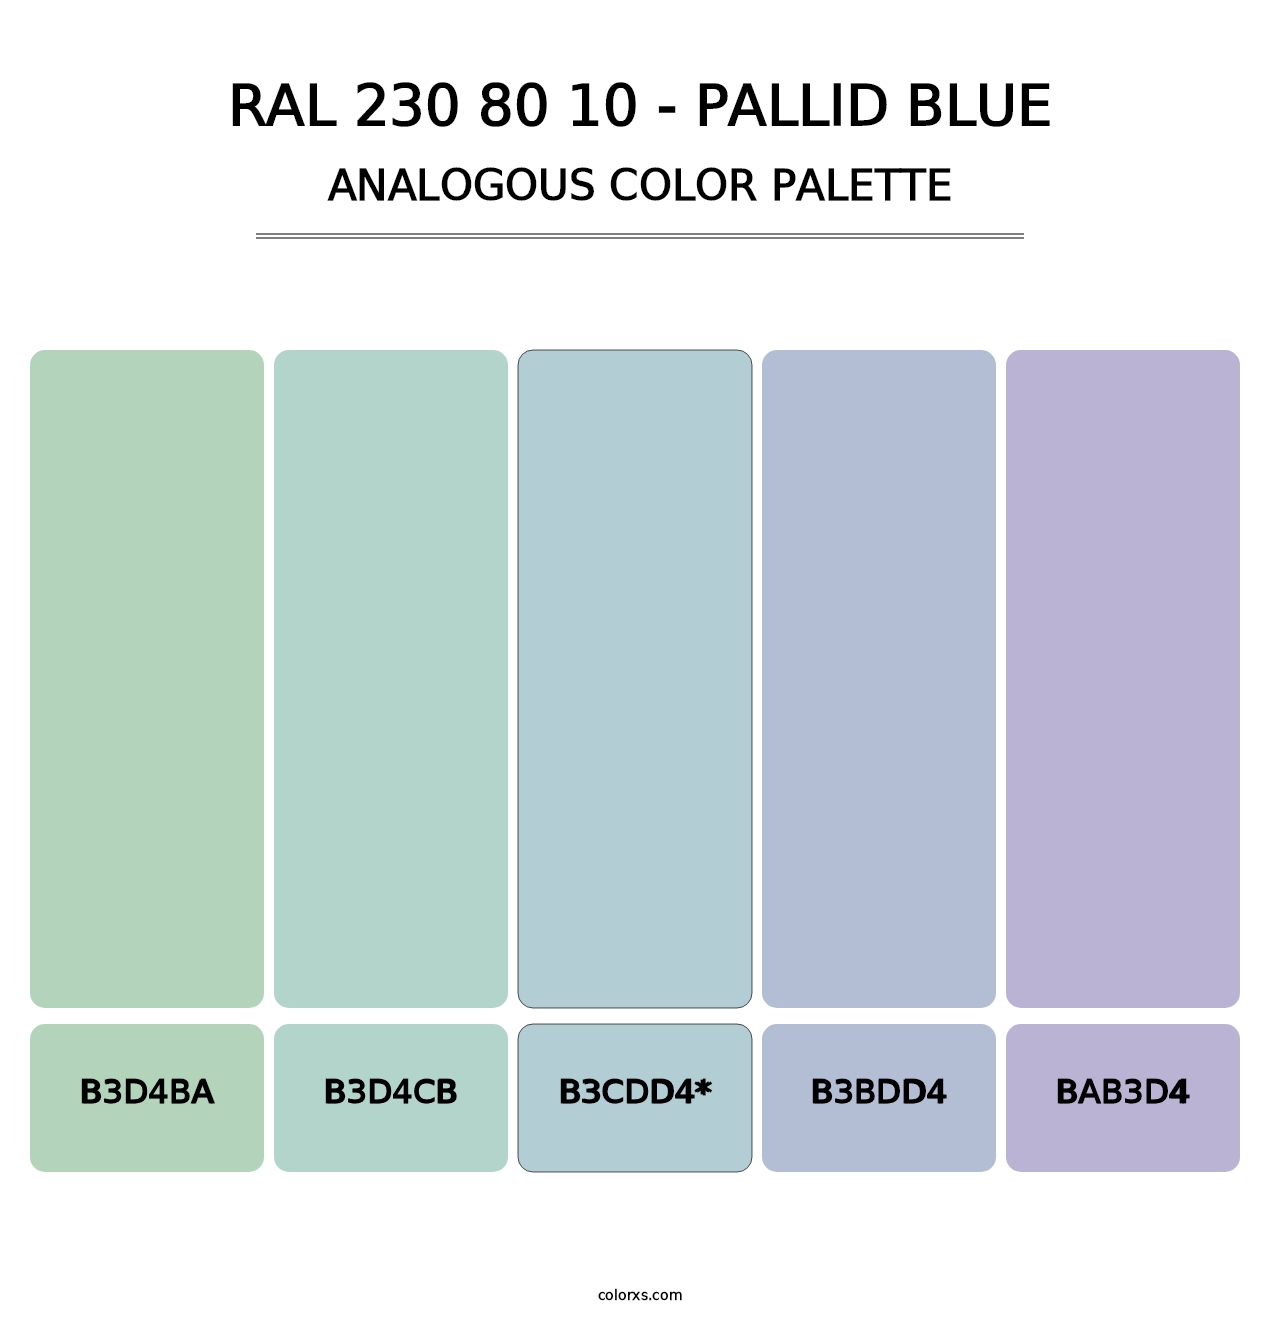 RAL 230 80 10 - Pallid Blue - Analogous Color Palette